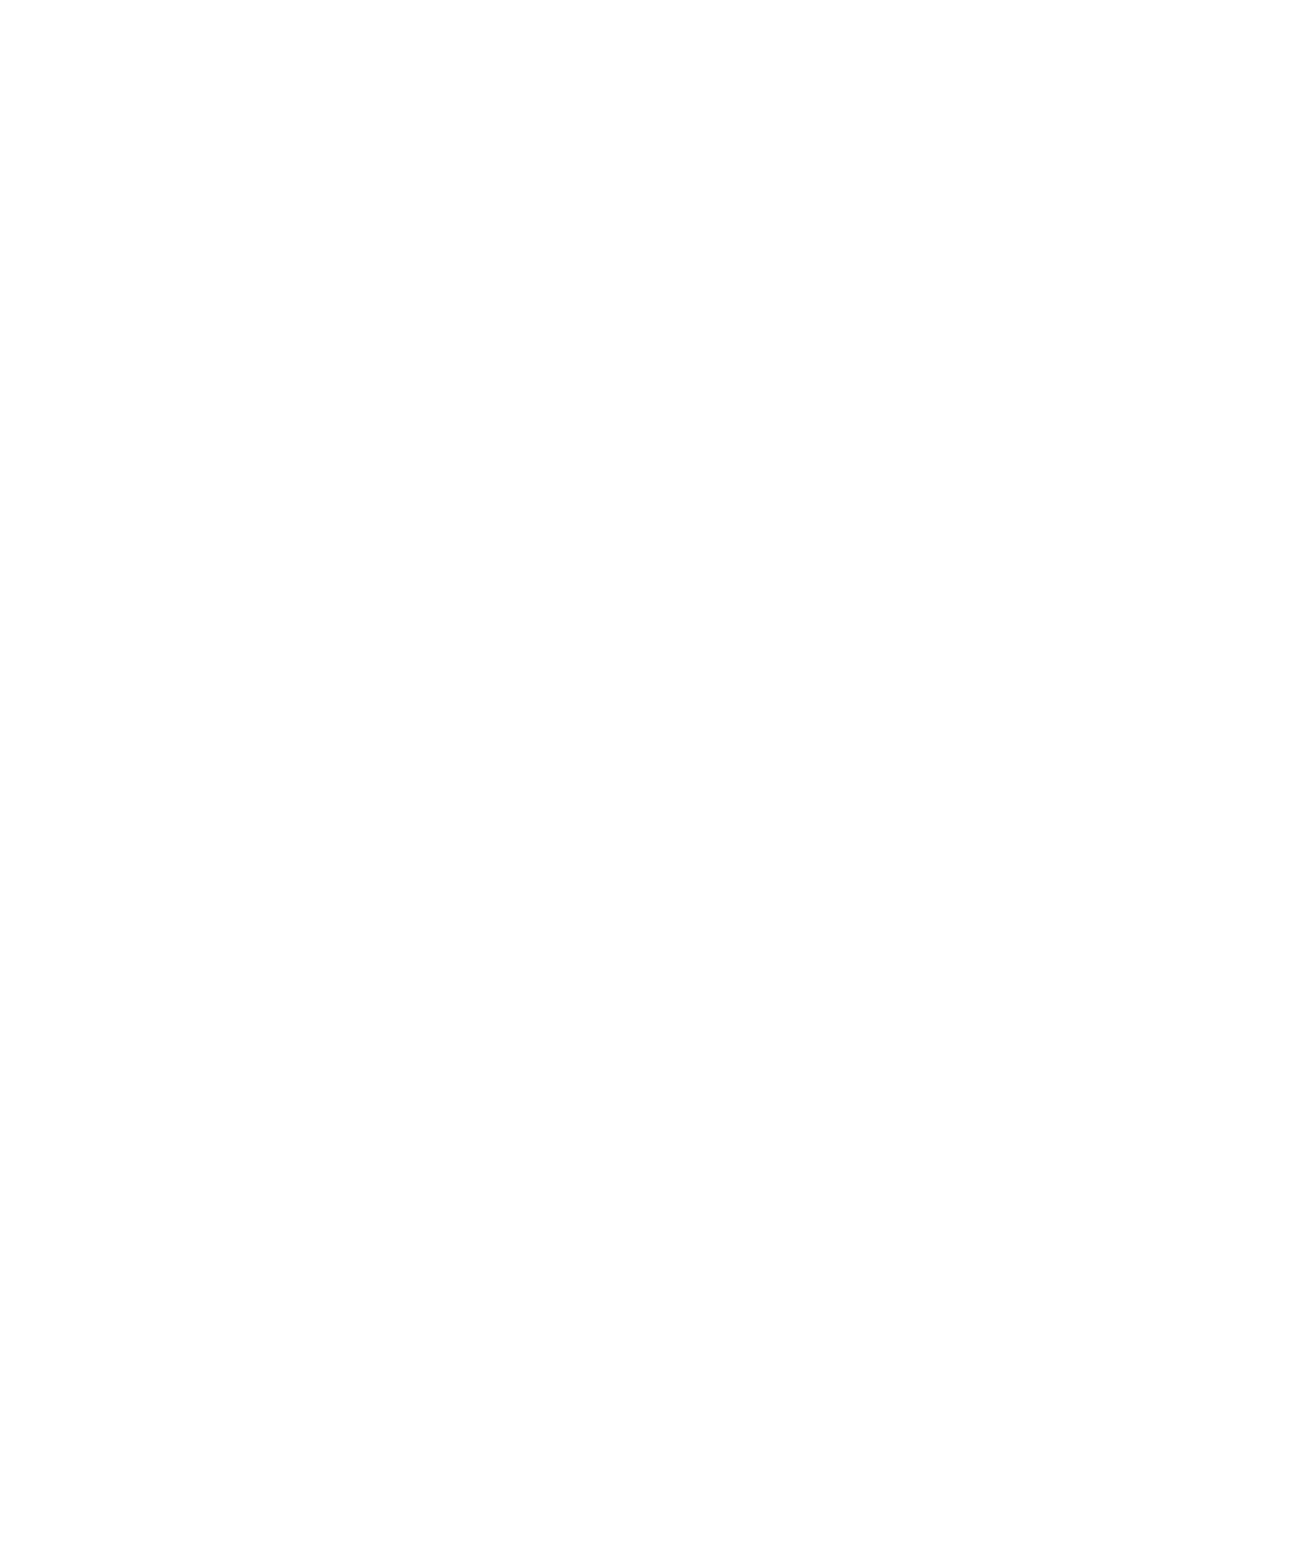 Bankcard-Solutions-BC